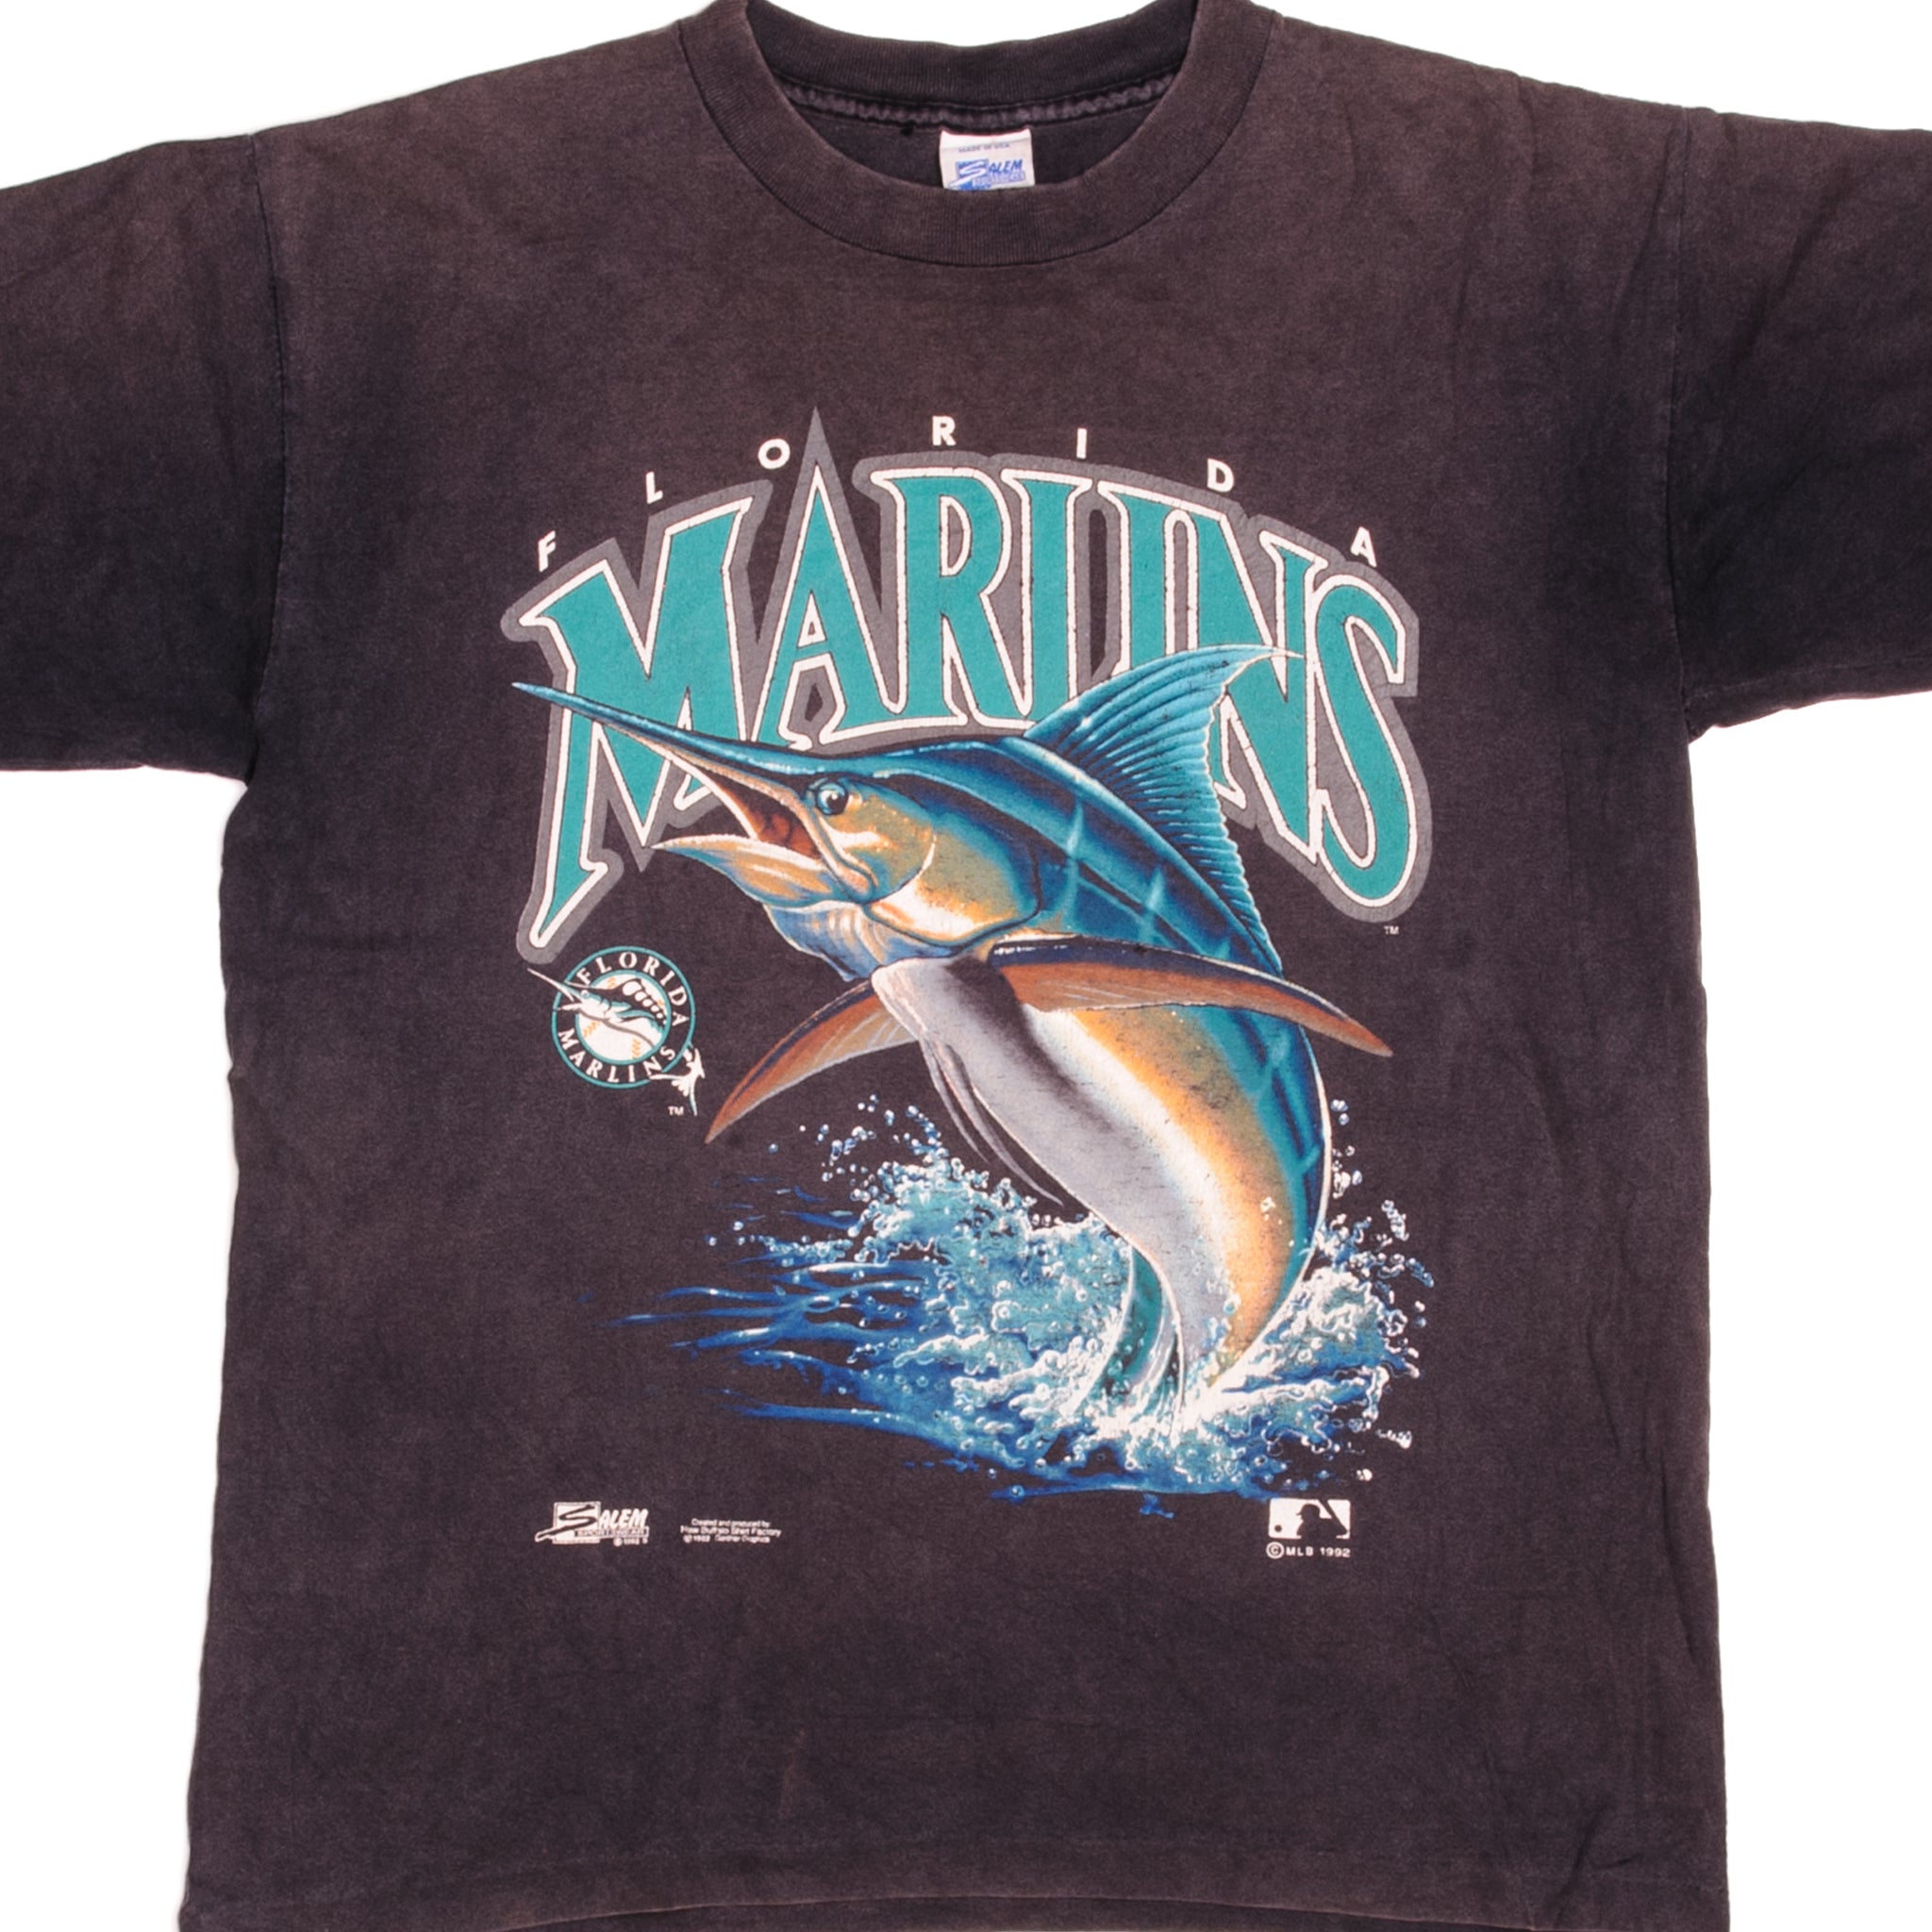 Florida Marlins Starter Jersey Vintage 90s - Tarks Tees